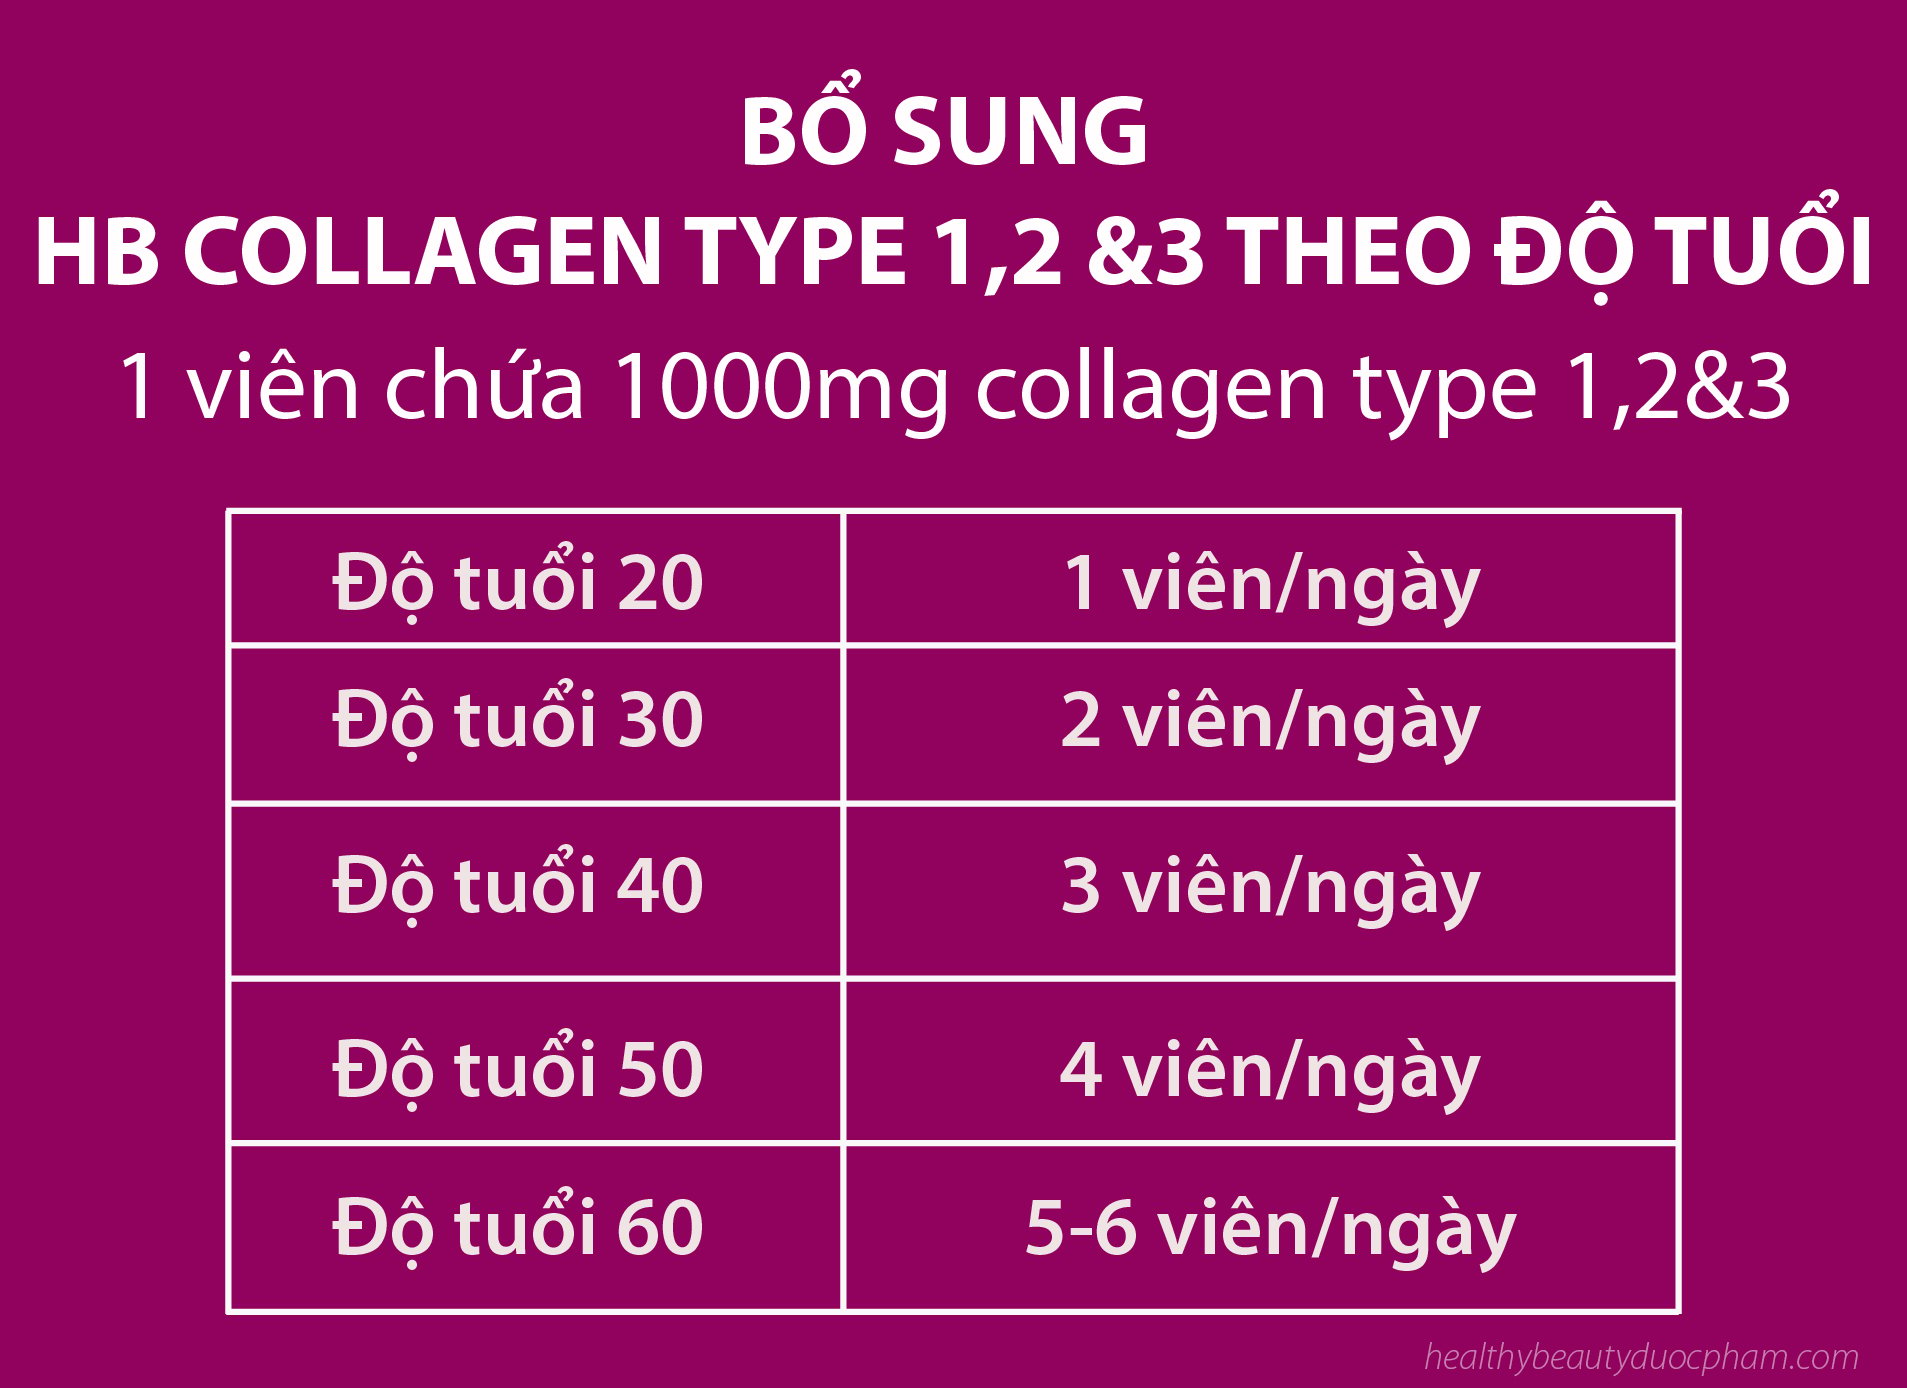 Liều Dùng HB Collagen Type 1,2,3 Theo Độ Tuổi